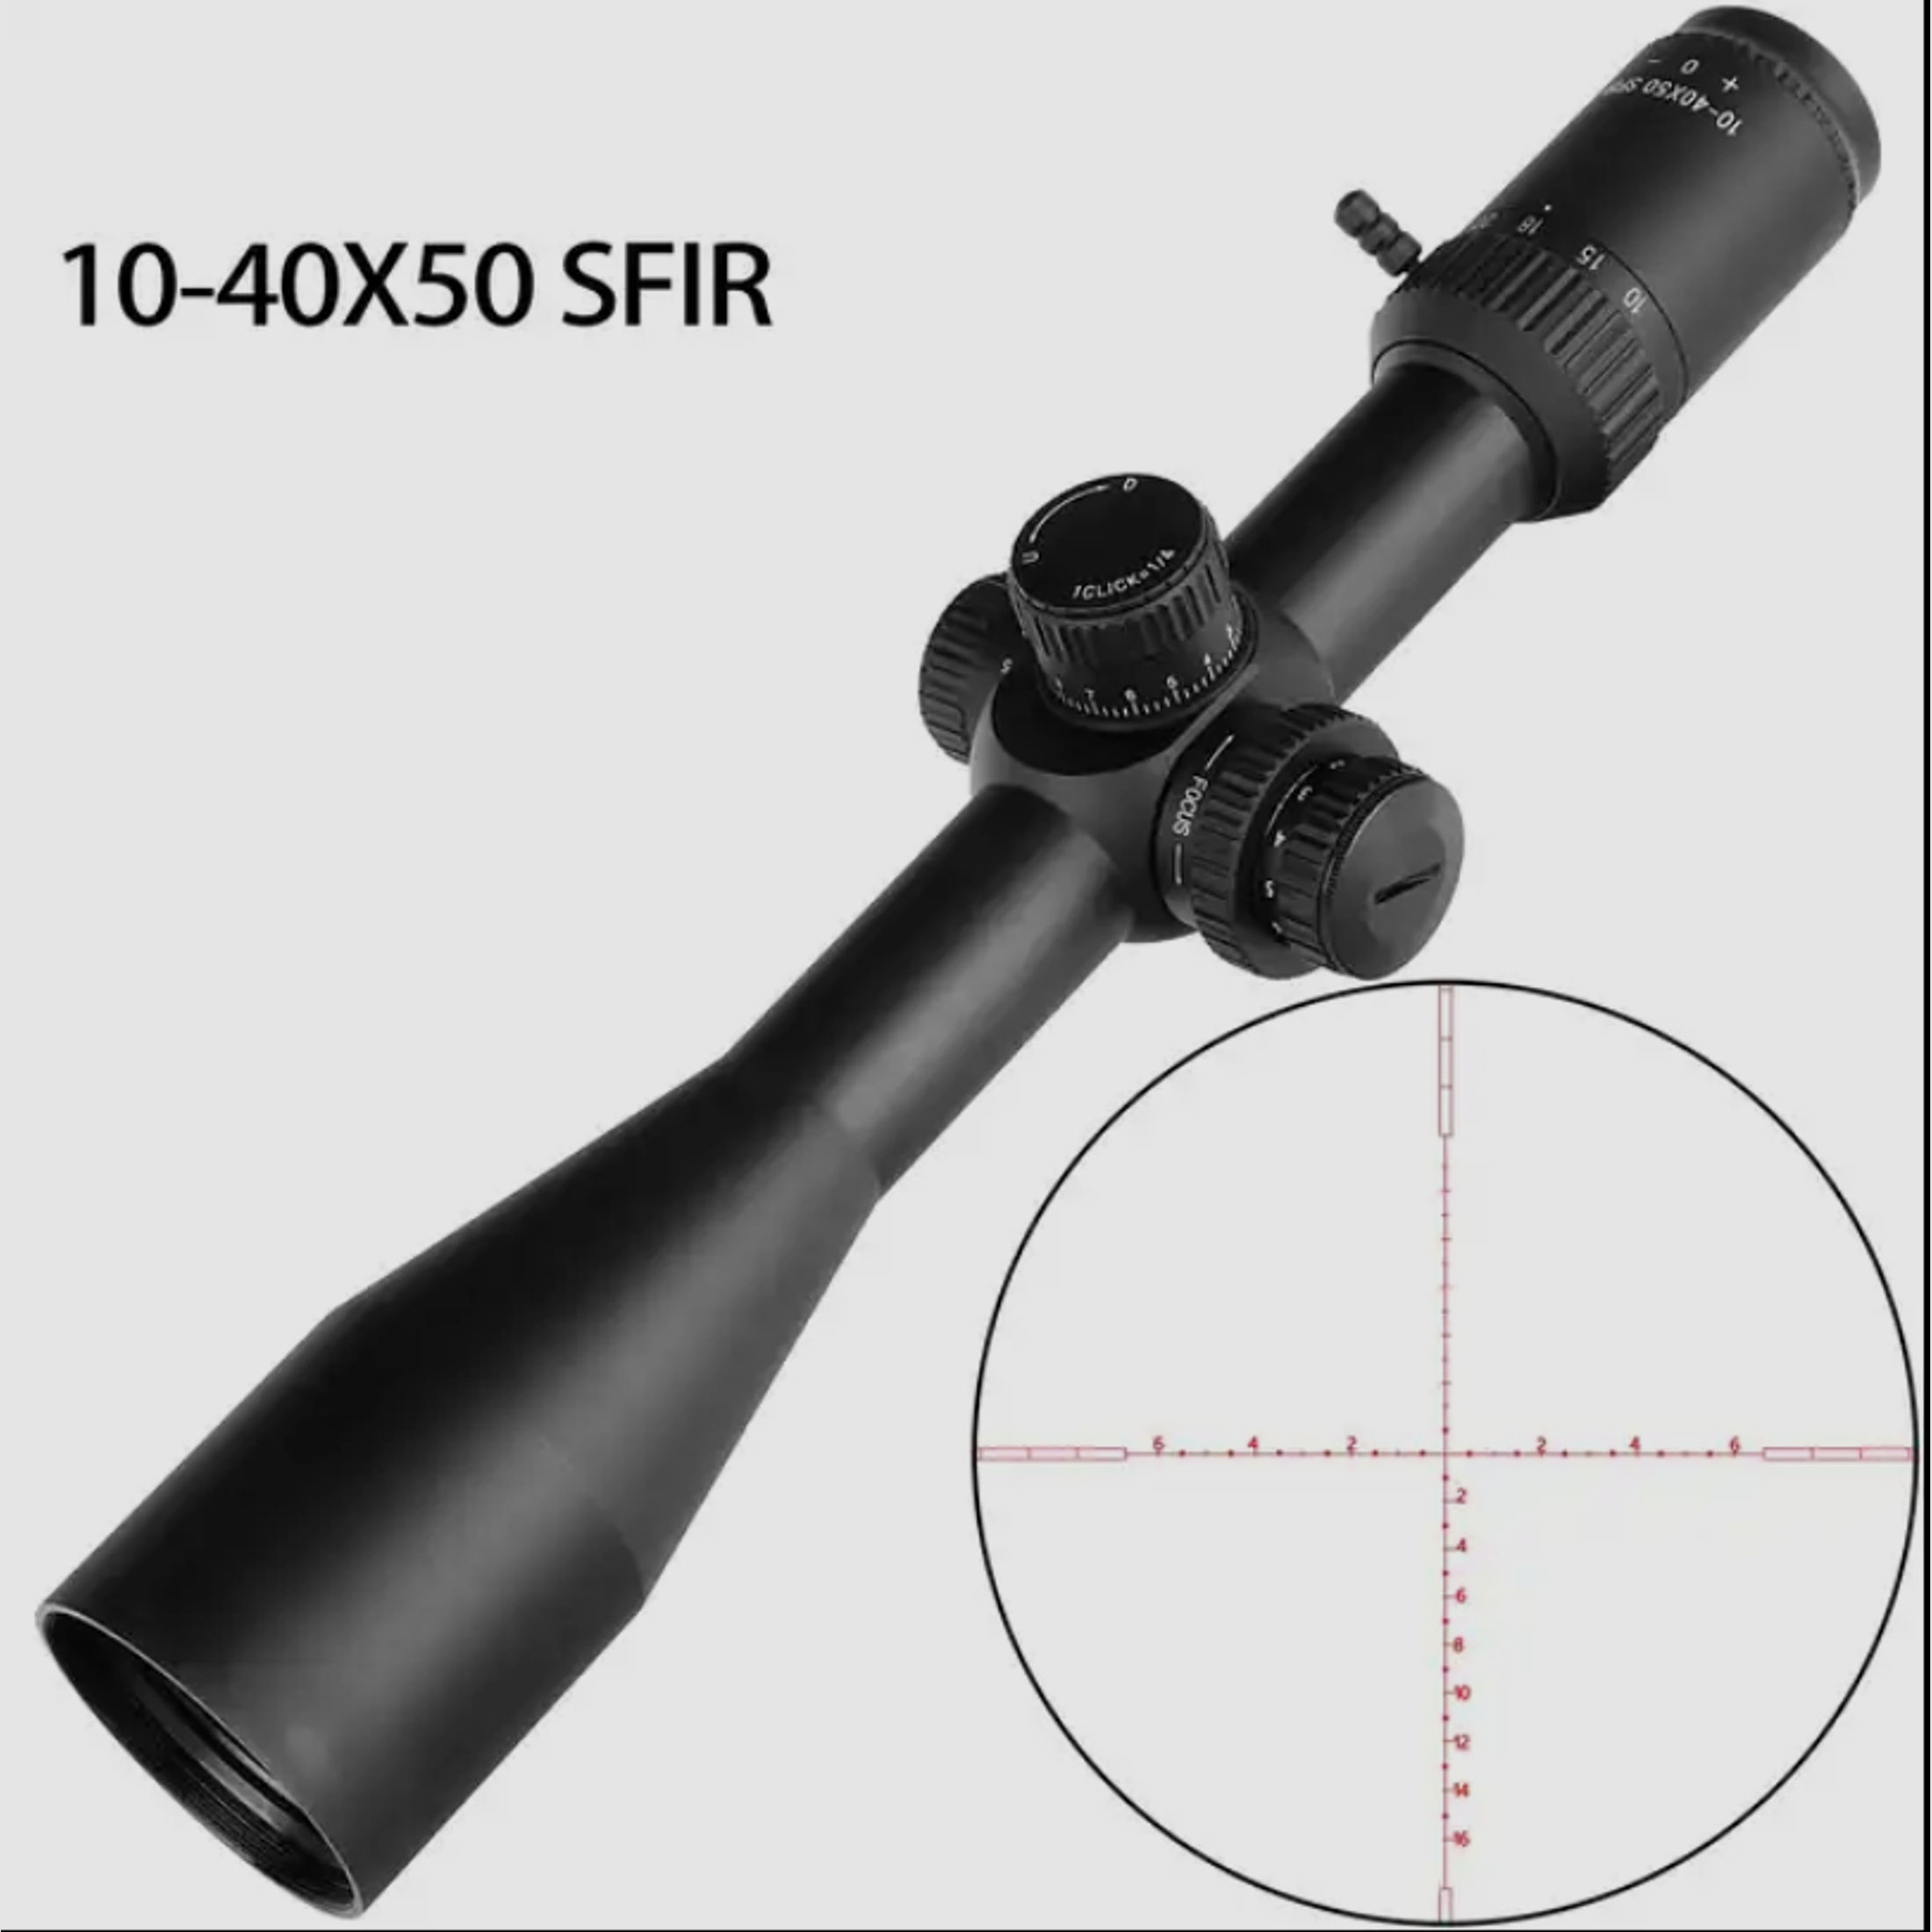 10-40X50 Zielfernrohr mit 11 / 20 mm Ringhalterung, für Jagd, Schießsport